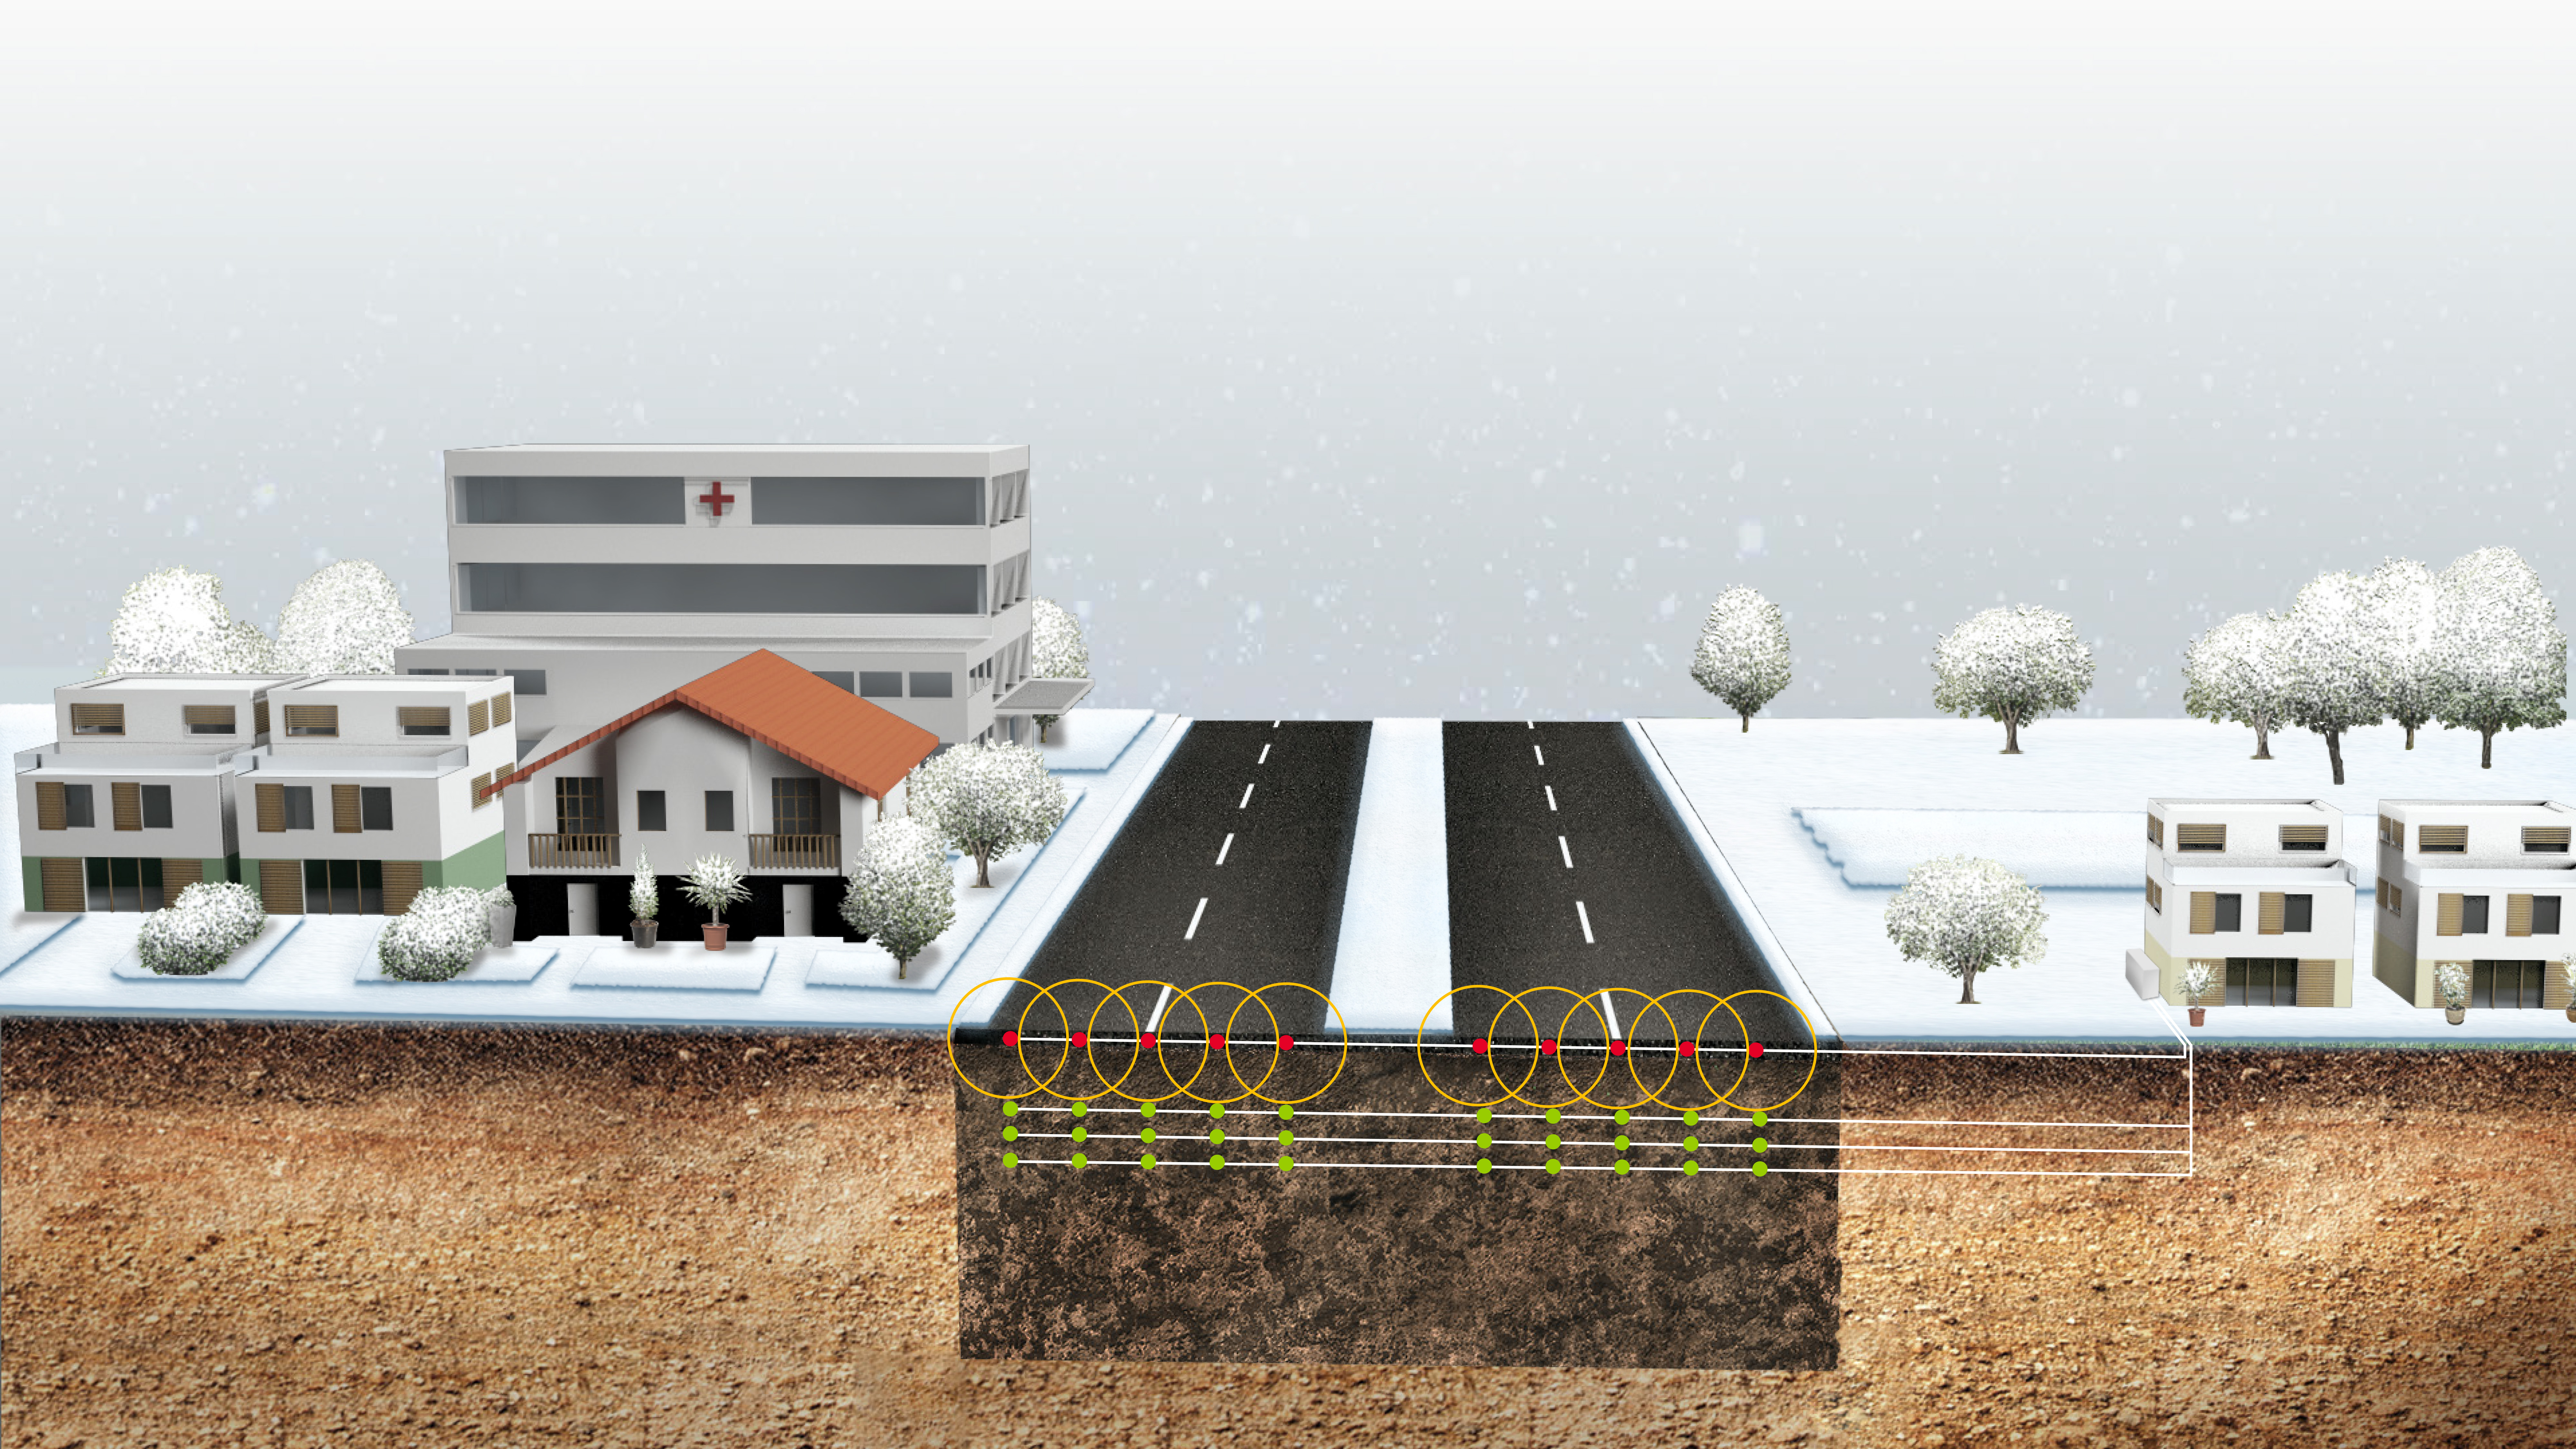 Viabilité hivernale Demain, les routes se déneigeront toute seule